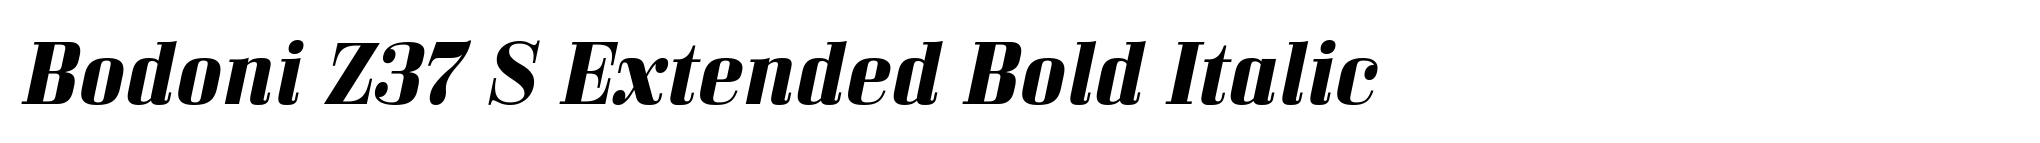 Bodoni Z37 S Extended Bold Italic image